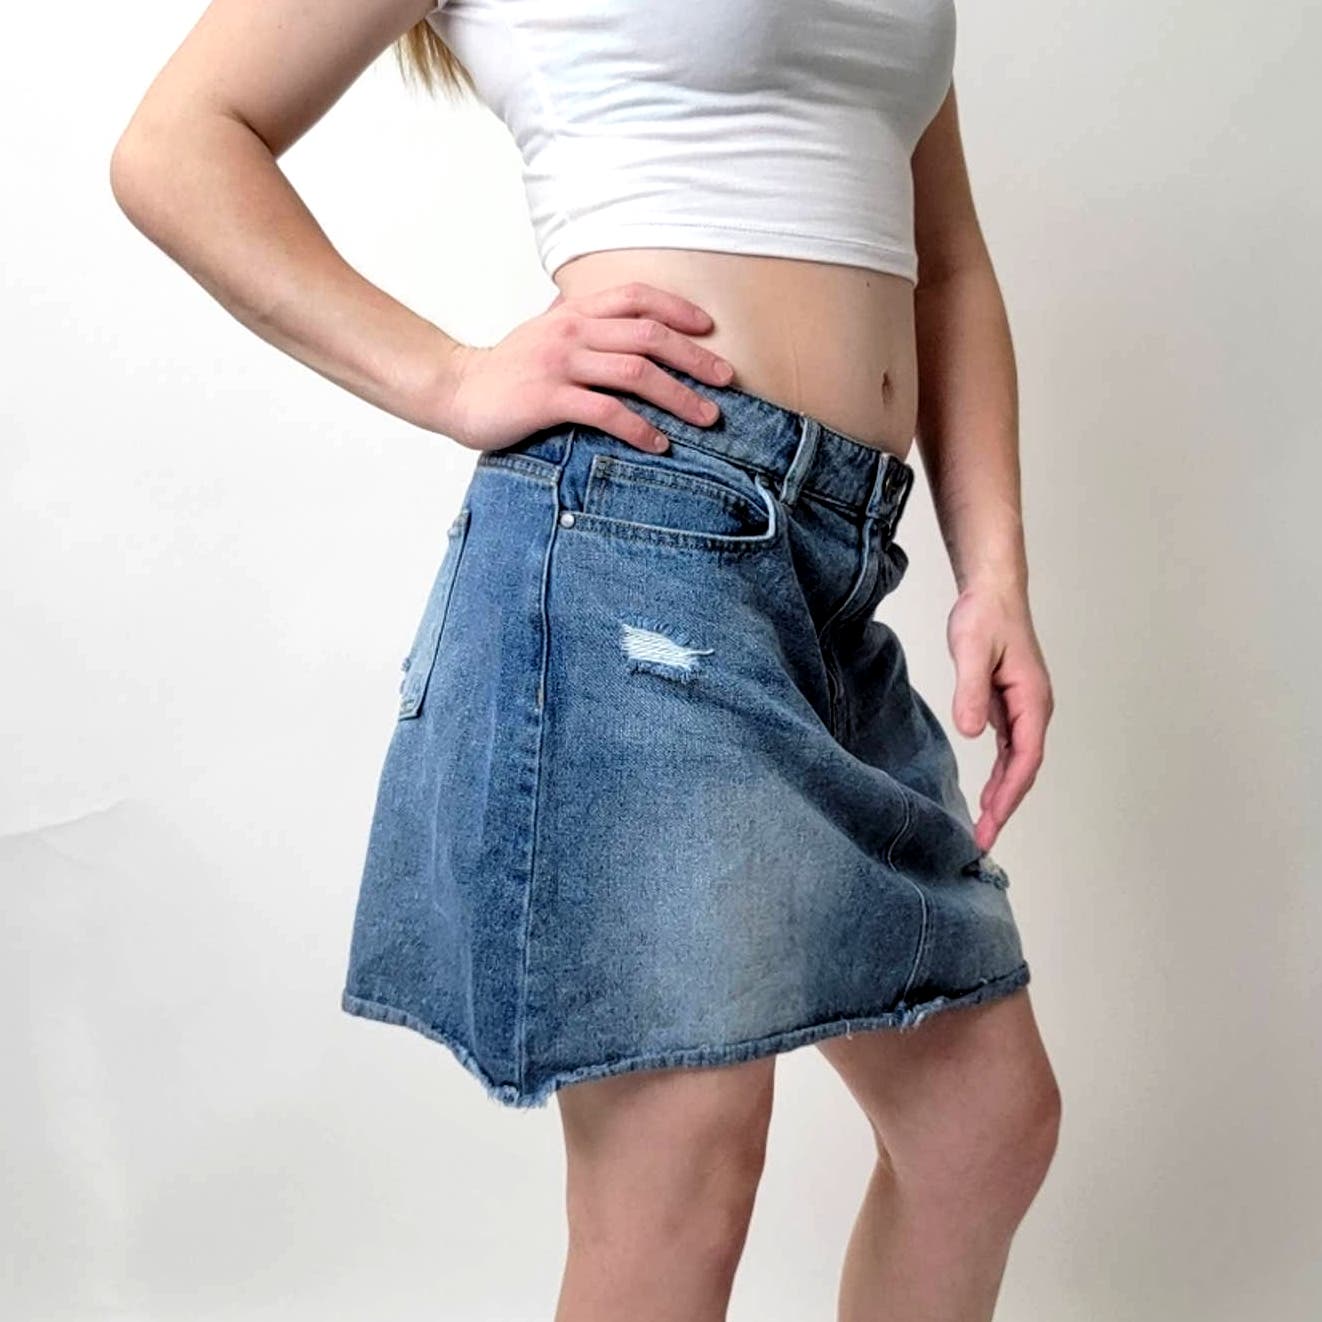 Harper Distressed Light Wash Denim Jean Mini Skirt - M